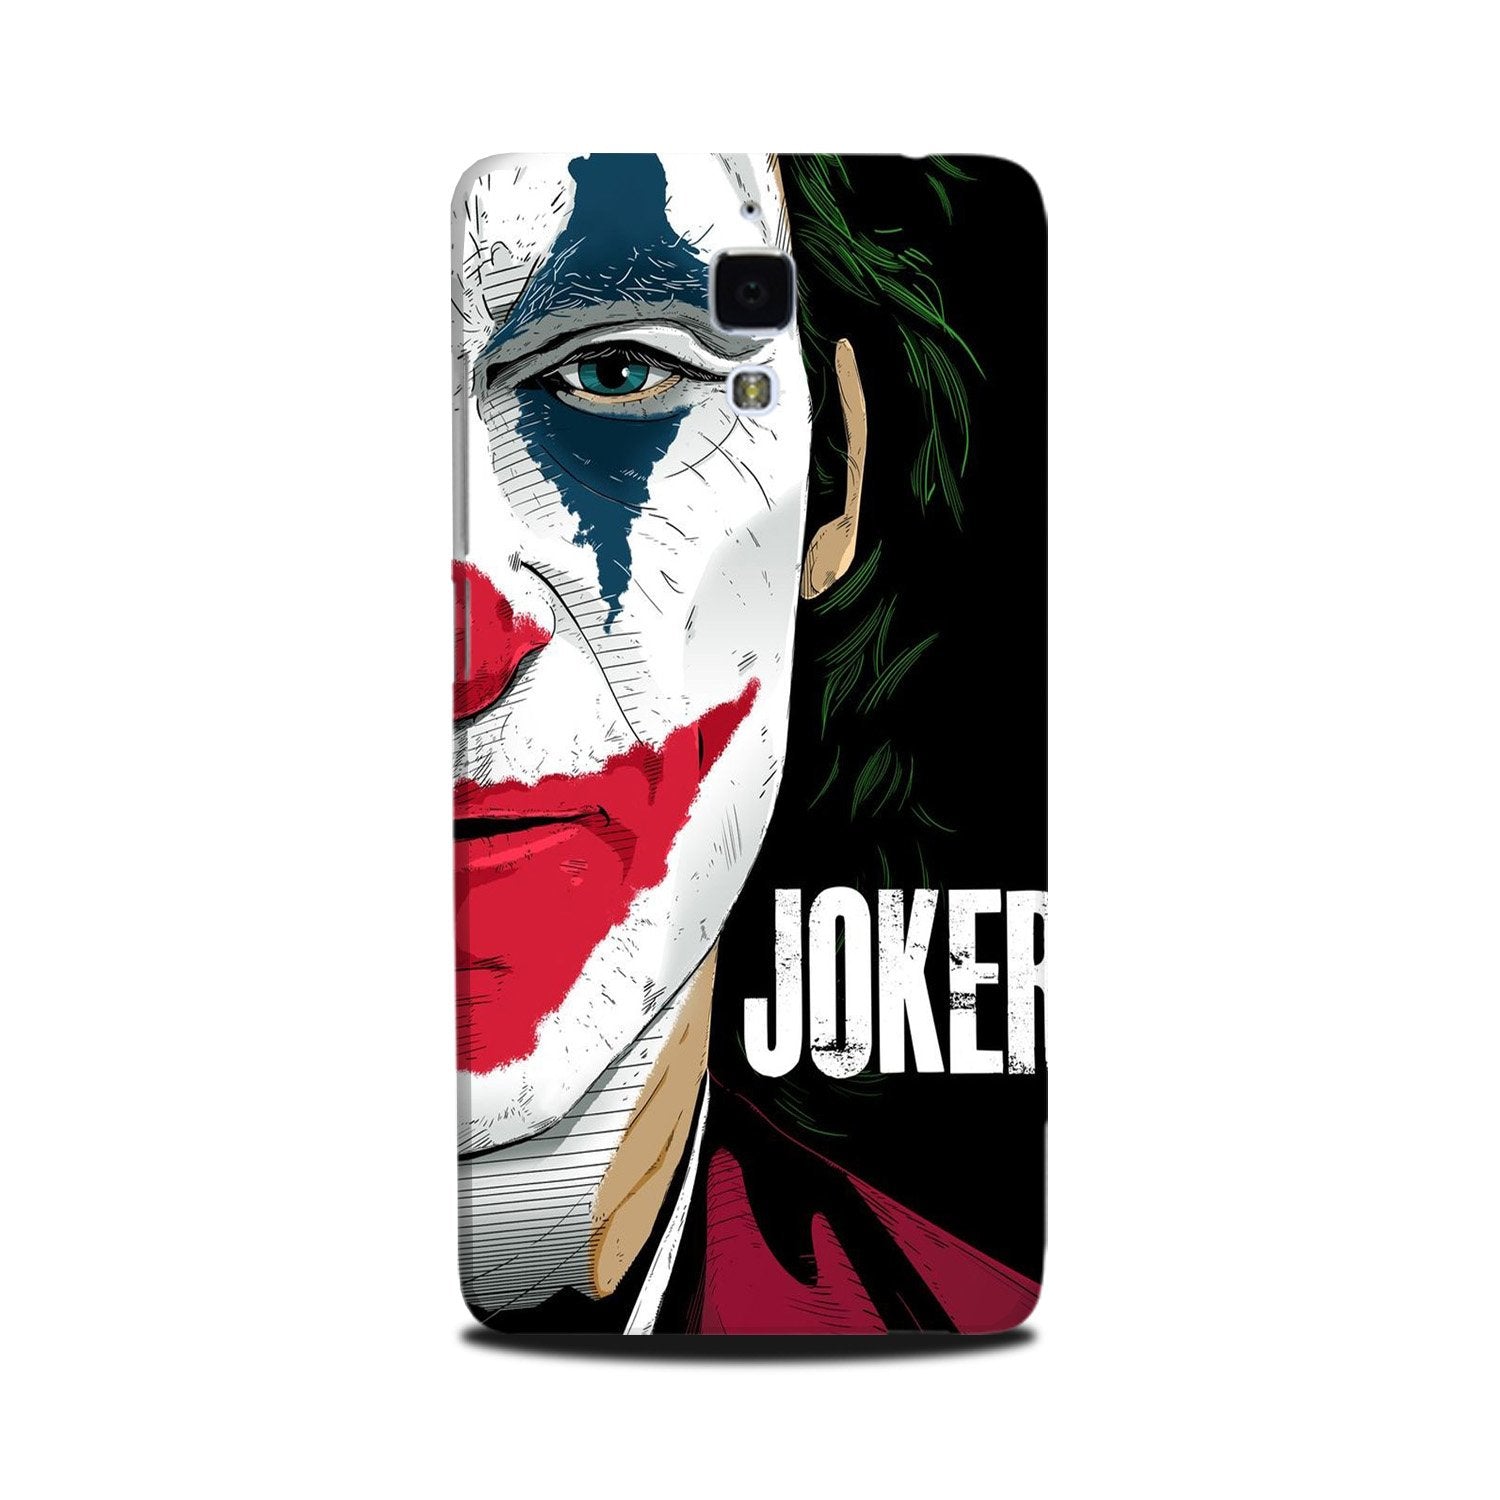 Joker Mobile Back Case for Mi 4(Design - 301)